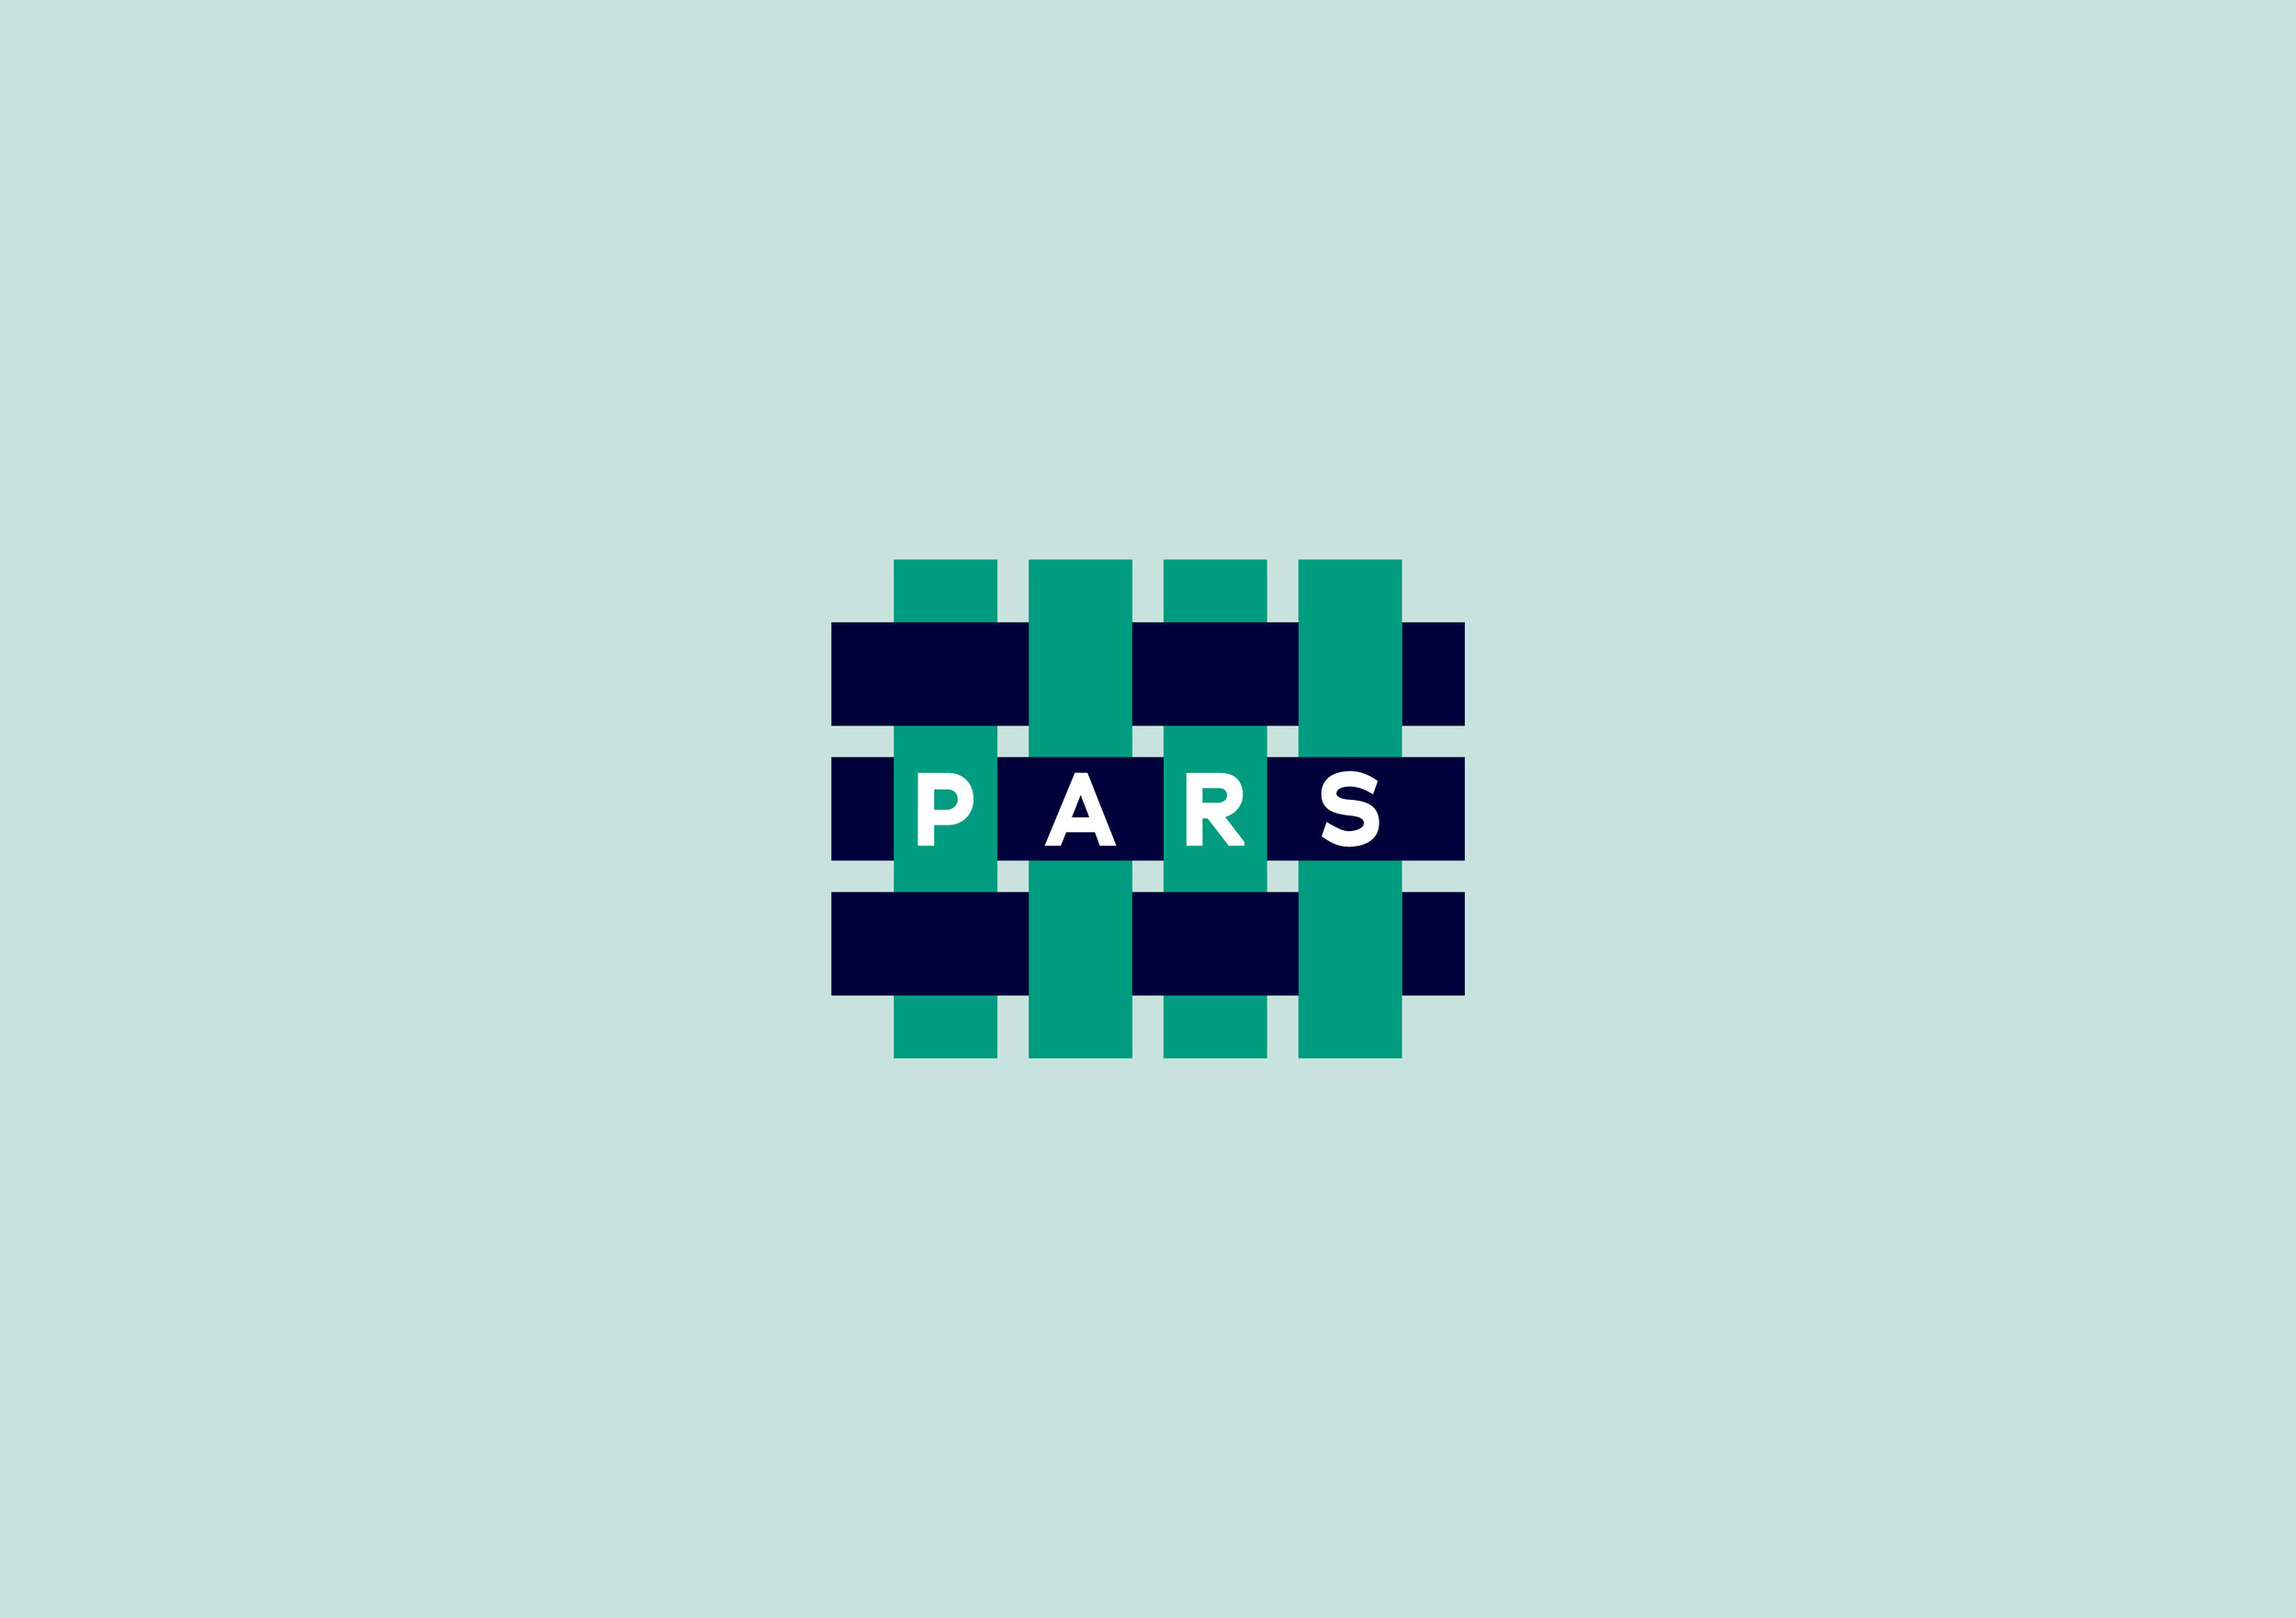 PARS_Logo.jpg